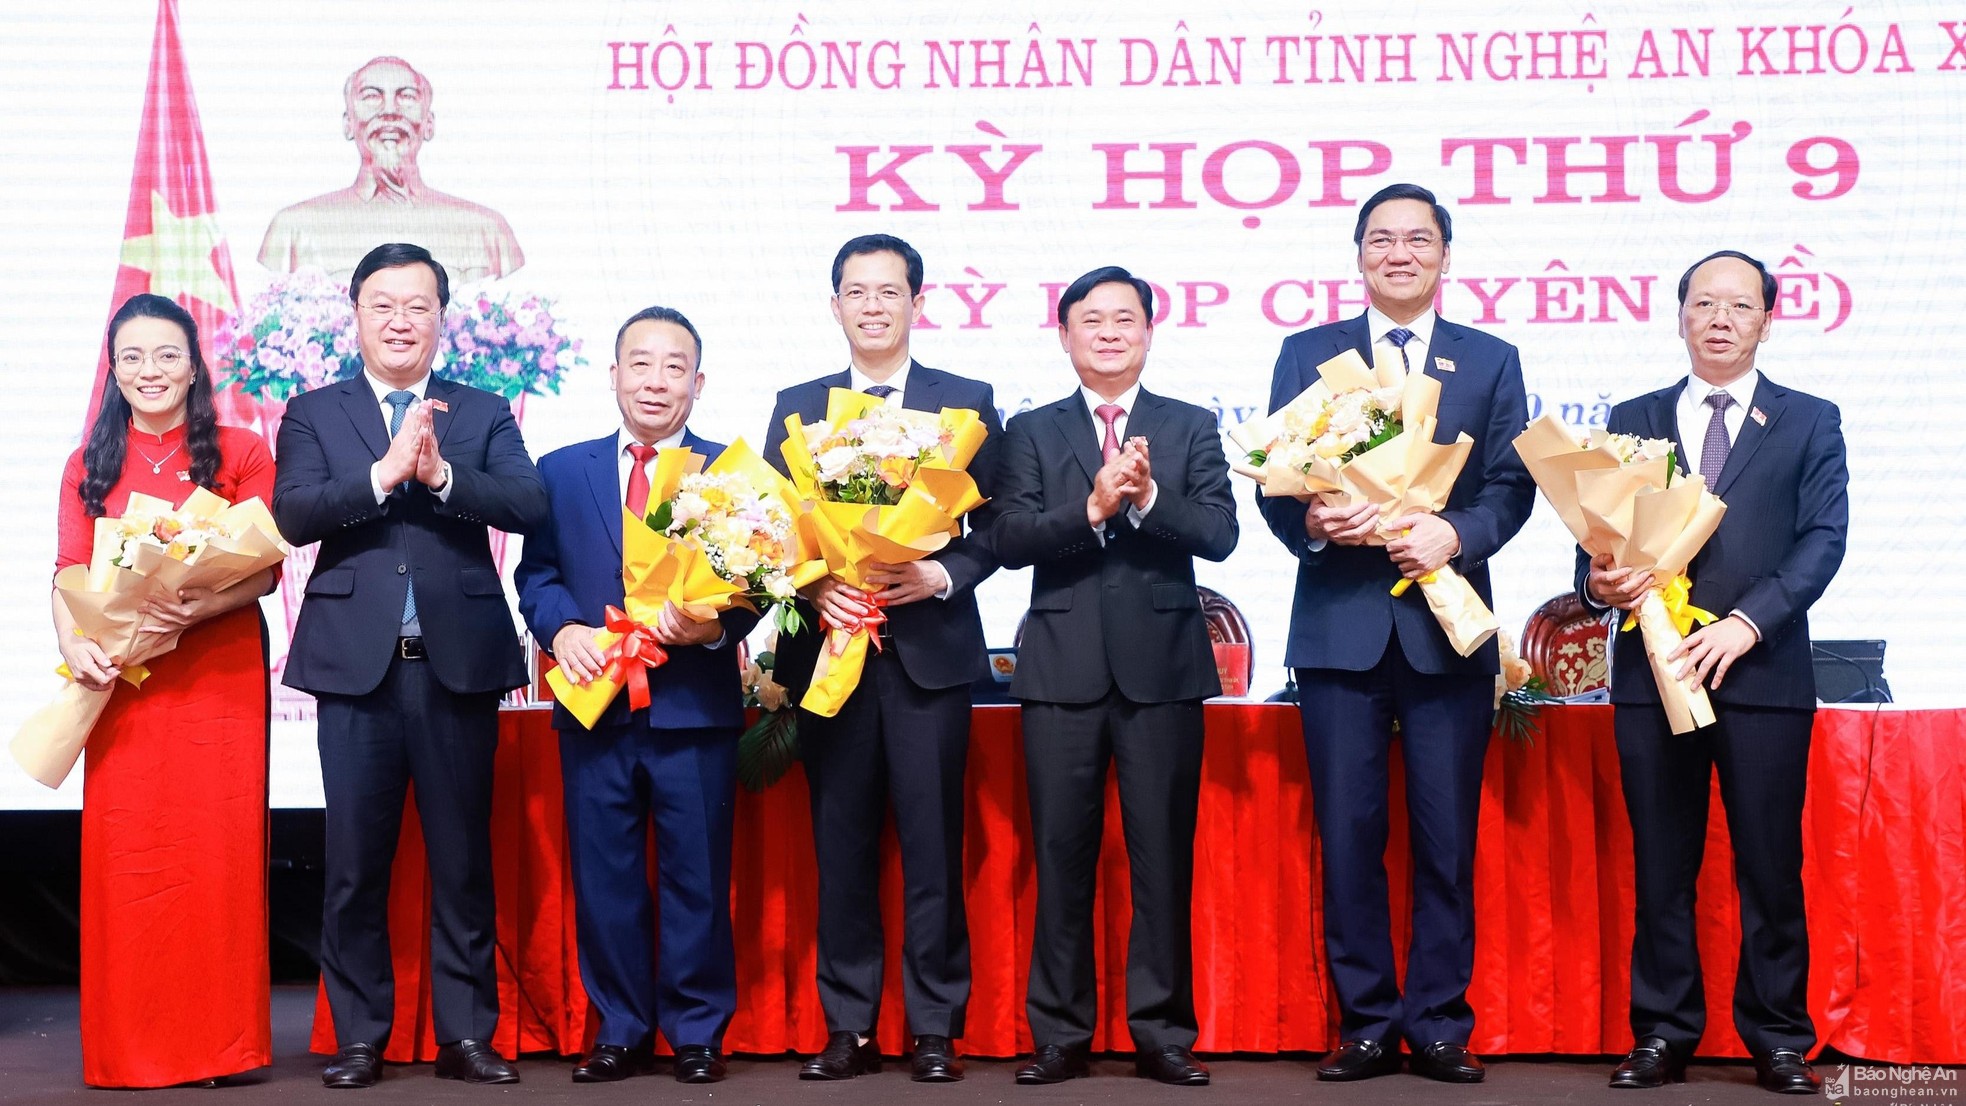 Ông Nguyễn Văn Đệ (thứ 3 từ trái sang) và ông  Bùi Thanh An dược bầu Phó Chủ tịch UBND tỉnh Nghệ An. Nguồn: Báo Nghệ An